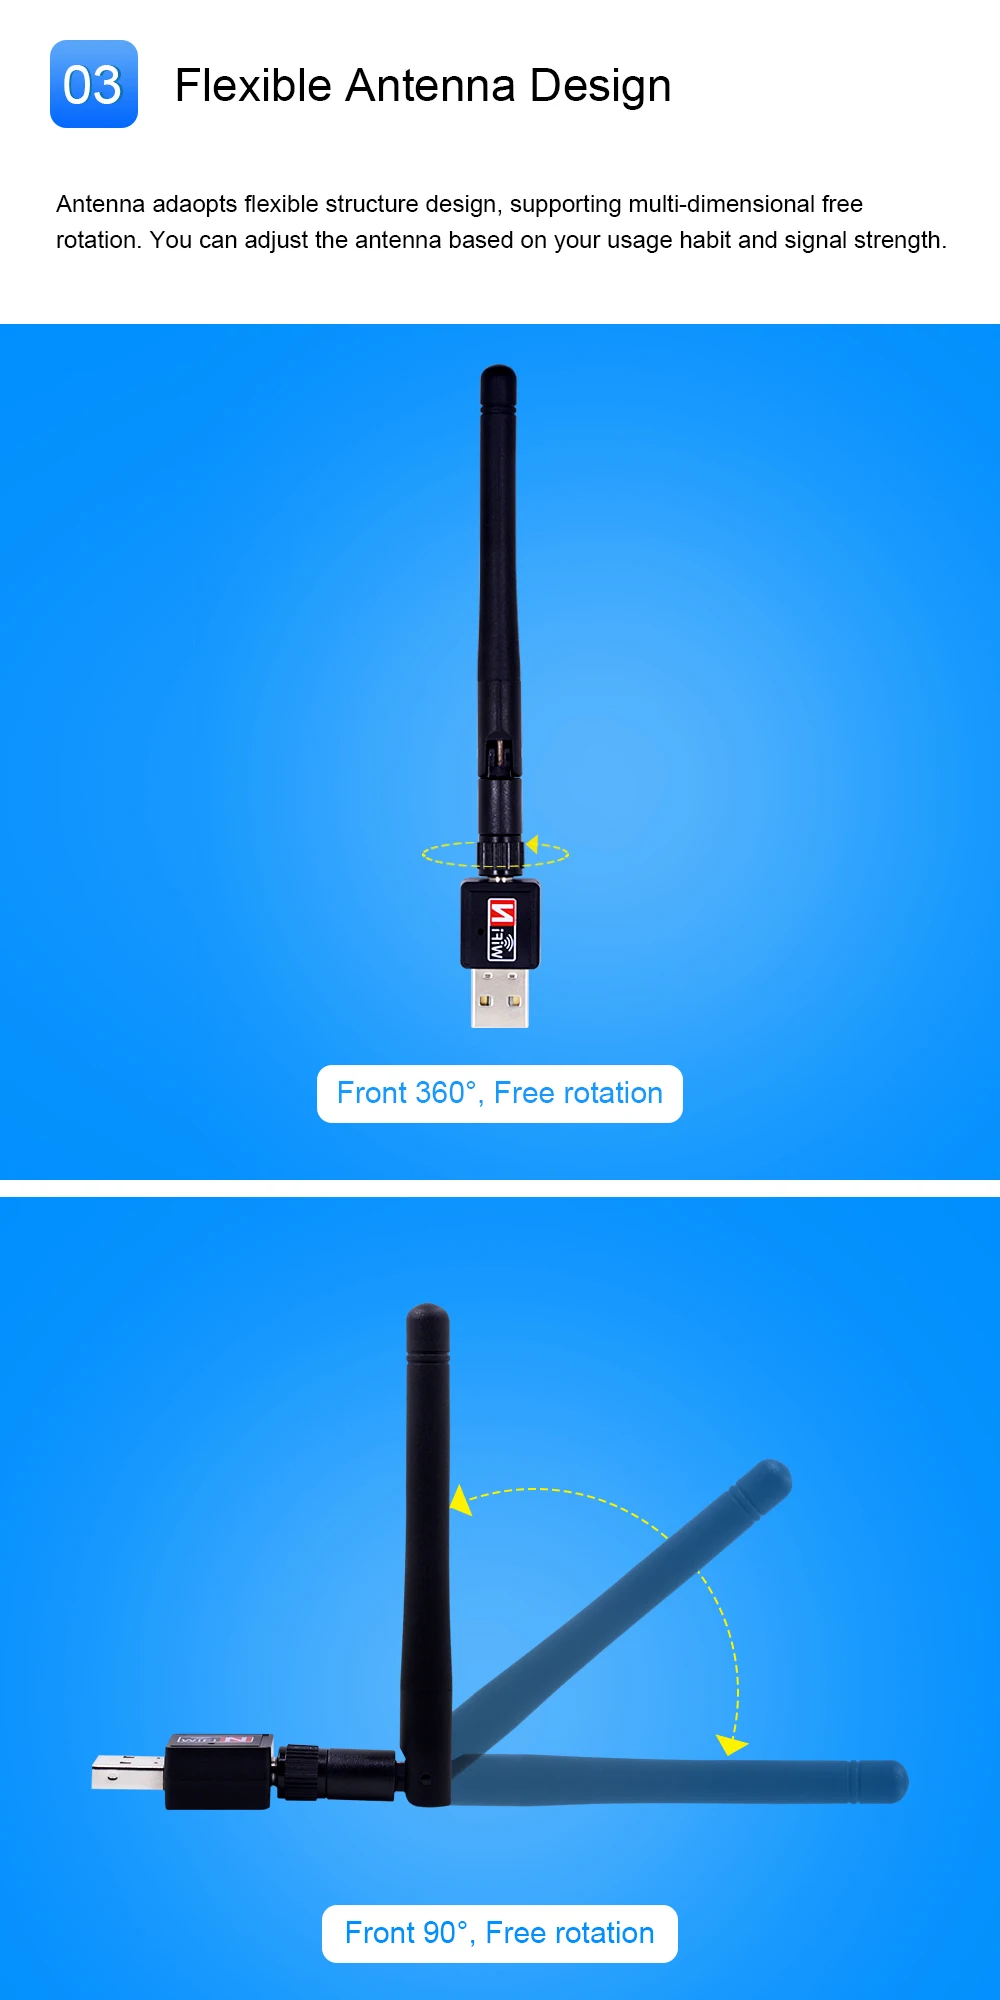 CHIPAL Горячая 150 Мбит/с USB WiFi адаптер внешняя беспроводная LAN сетевая карта защитный Мини-ключ USB Wi-Fi приемник Антенна 802.11n/g/b для ПК